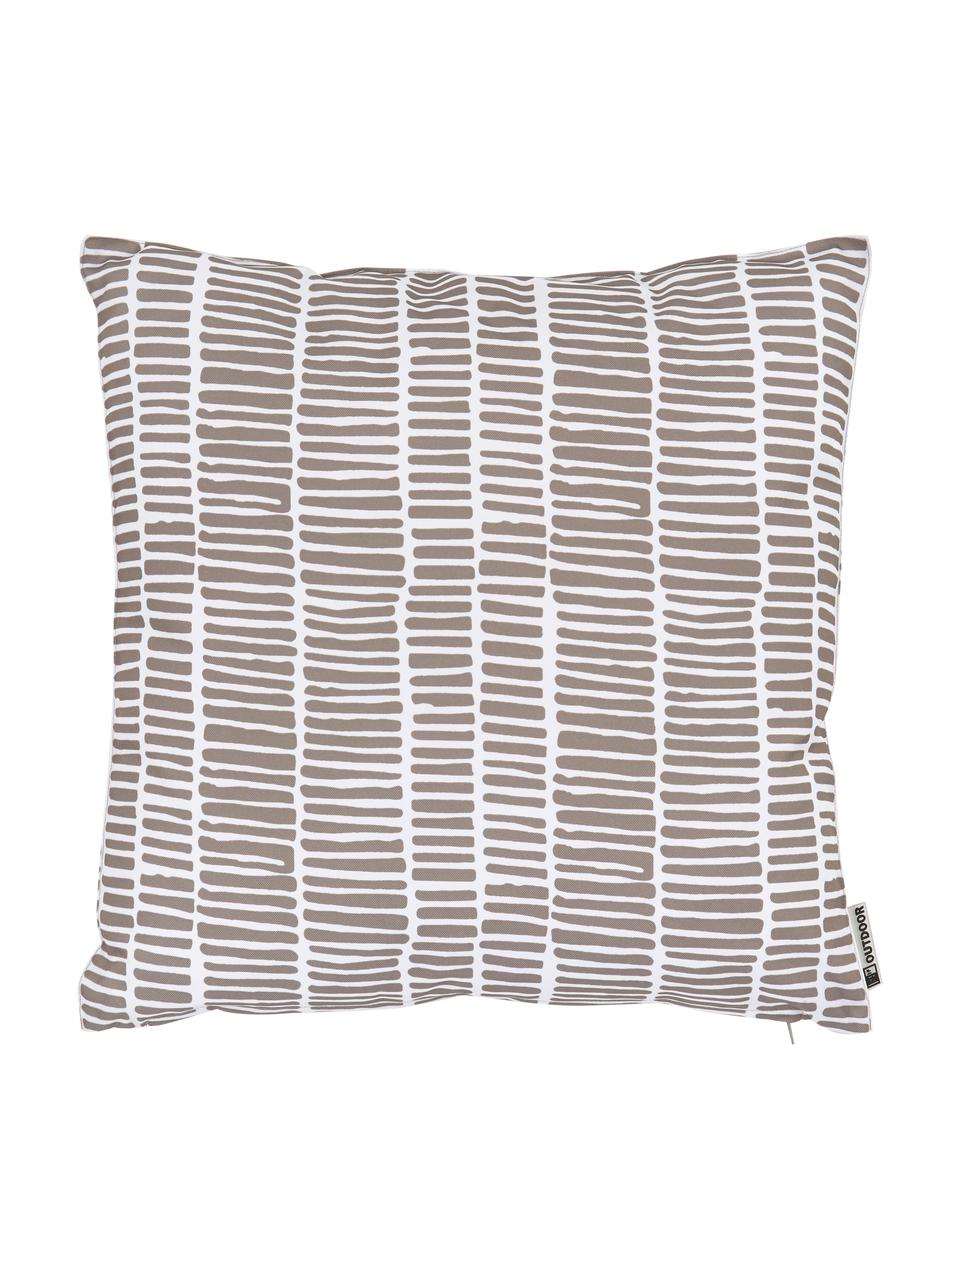 Outdoor-Kissen Little Stripe, mit Inlett, 100% Polyester, Weiss, Taupe, B 47 x L 47 cm